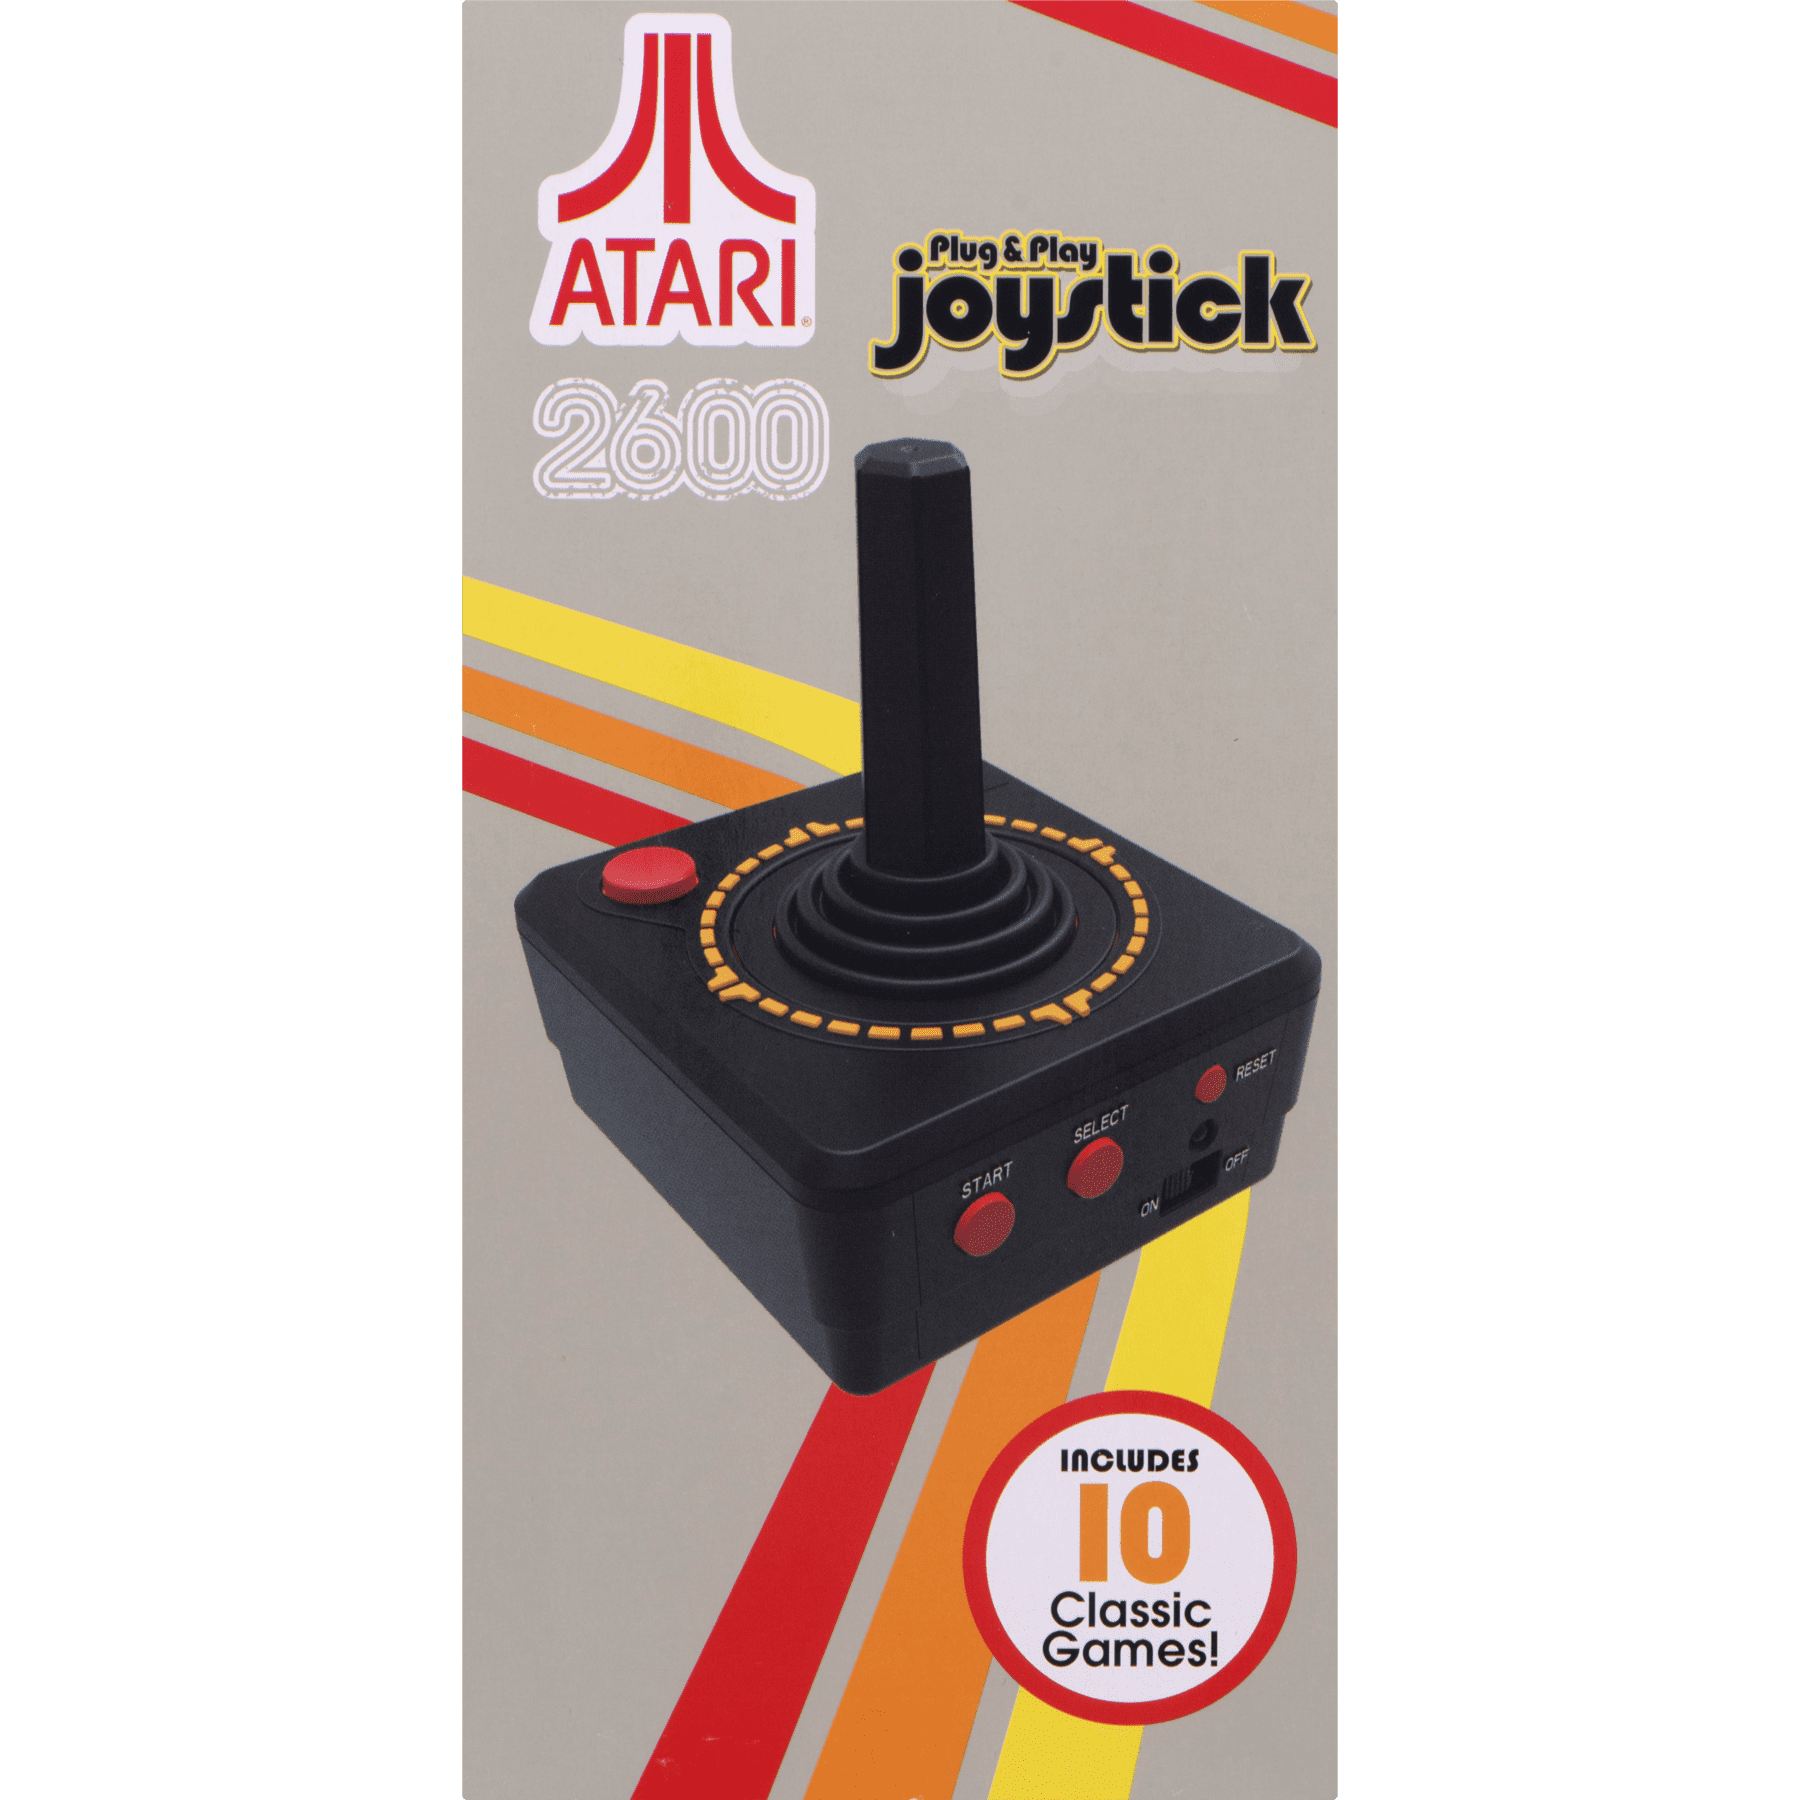 plug and play joystick games